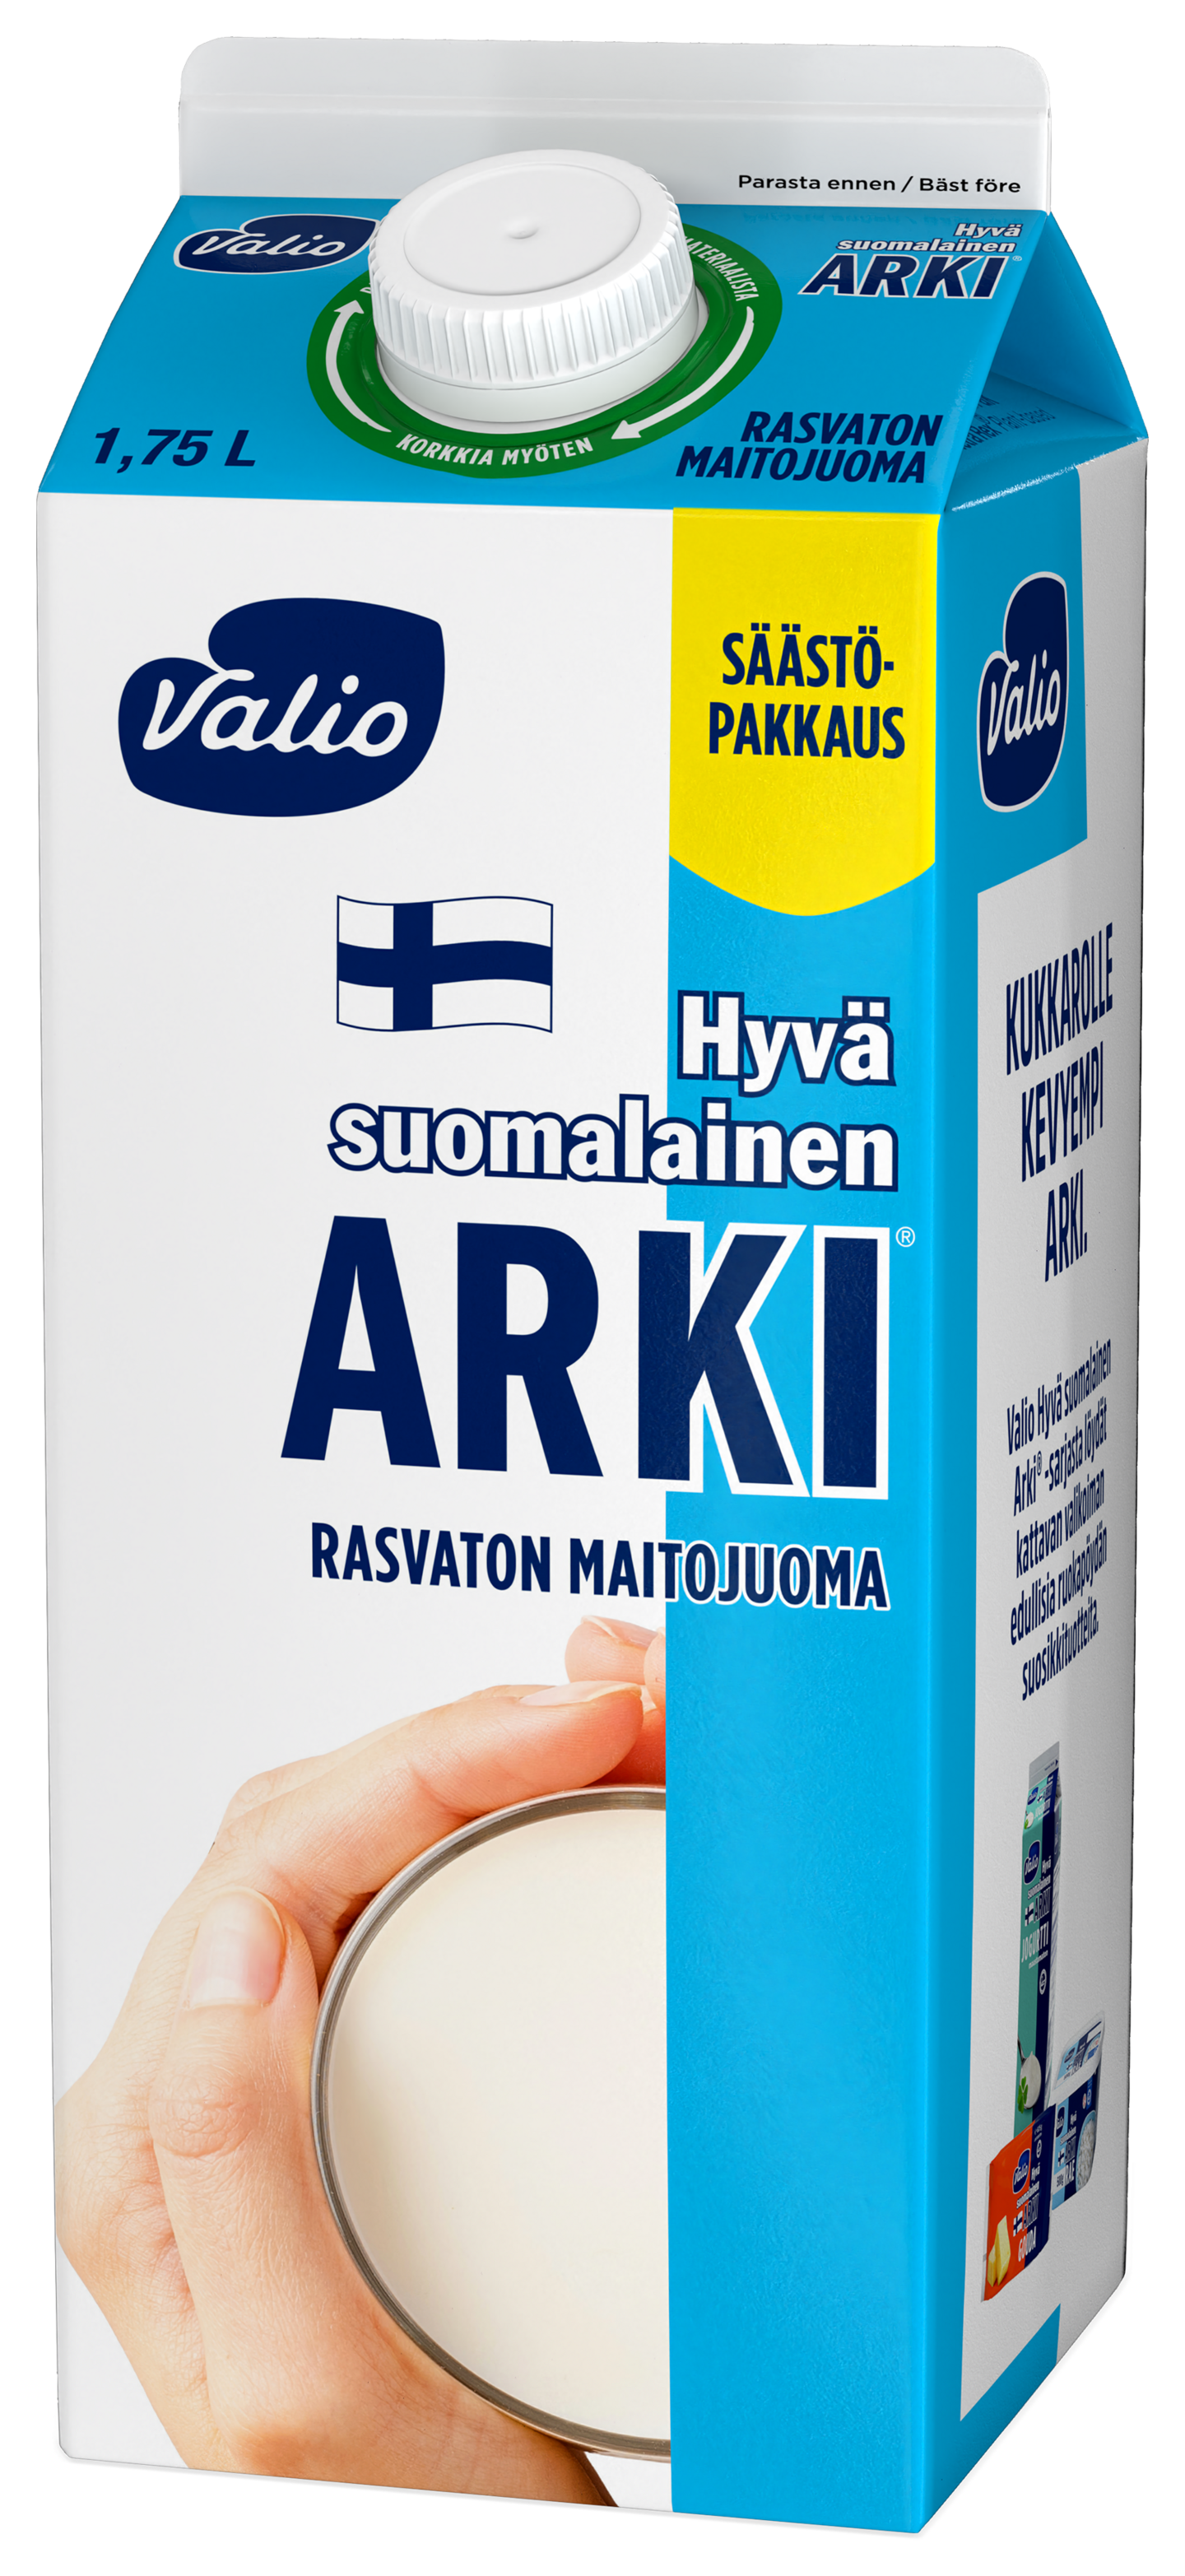 Valio Hyvä suomalainen Arki rasvaton maitojuoma 1,75l